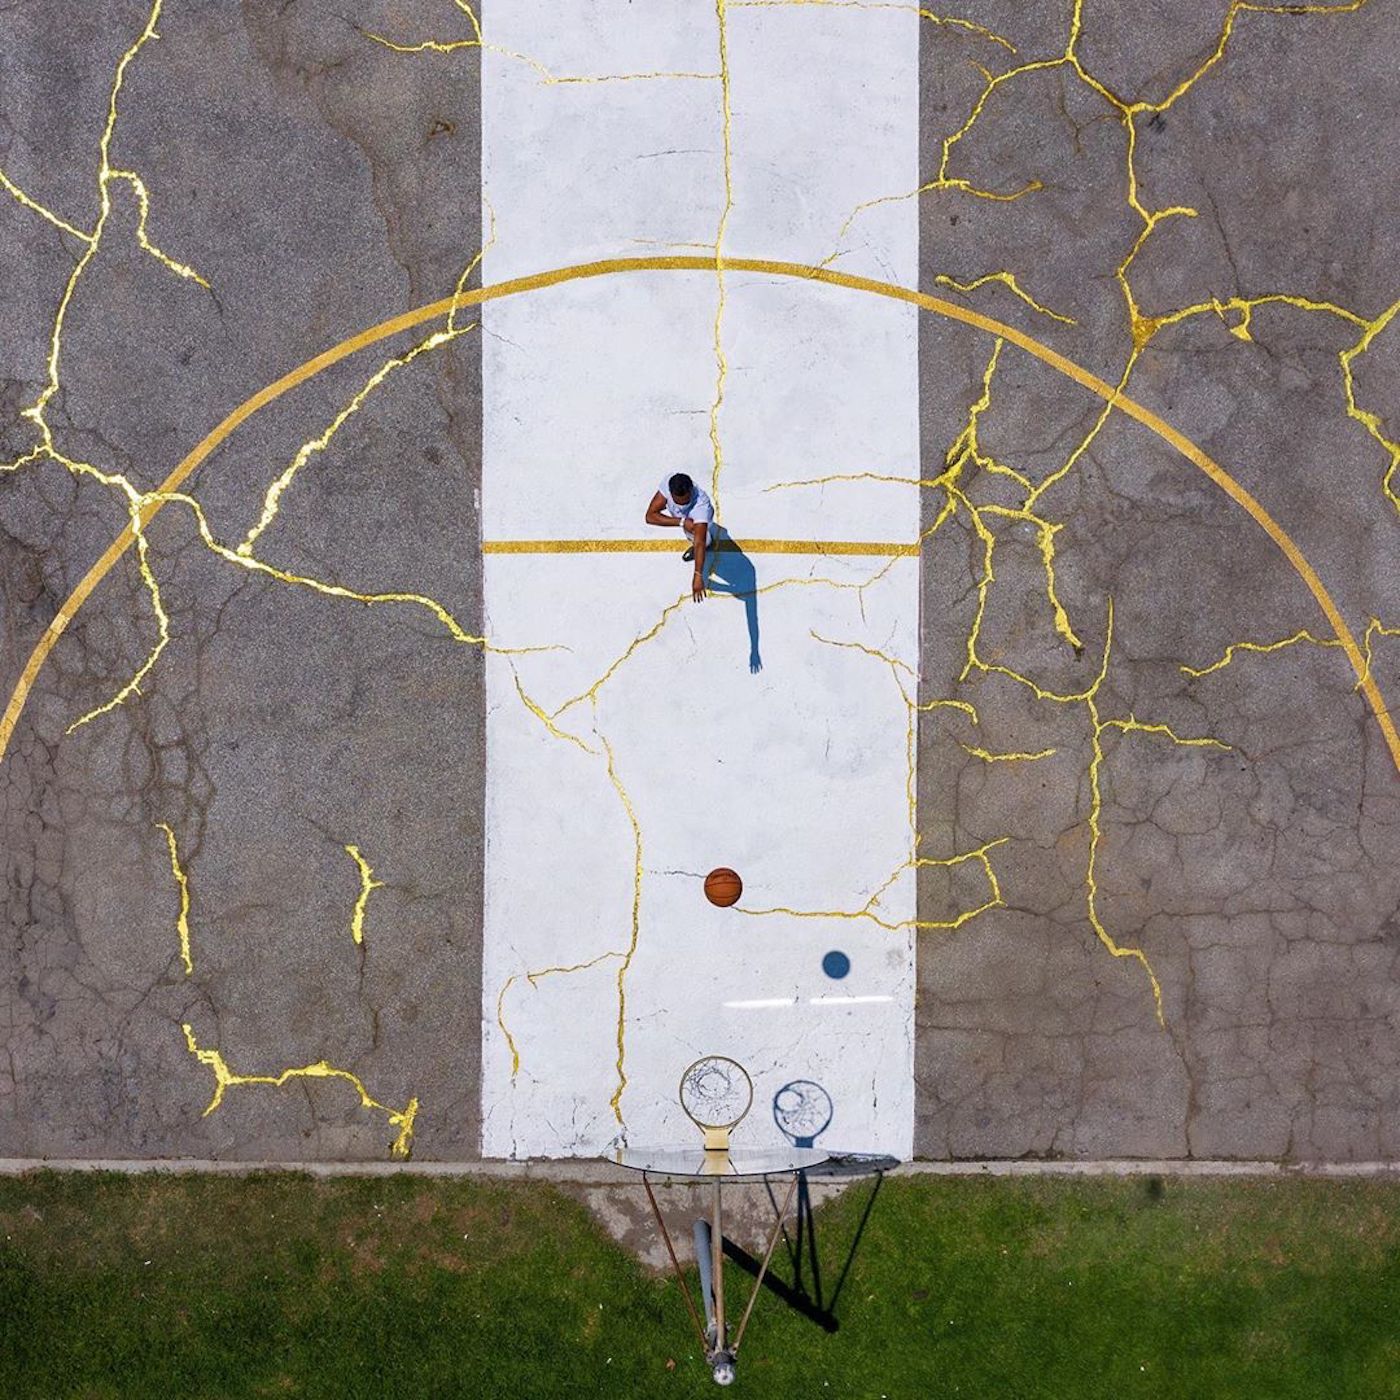 L'artiste Victor Solomon répare un terrain basket avec de la poudre d'or